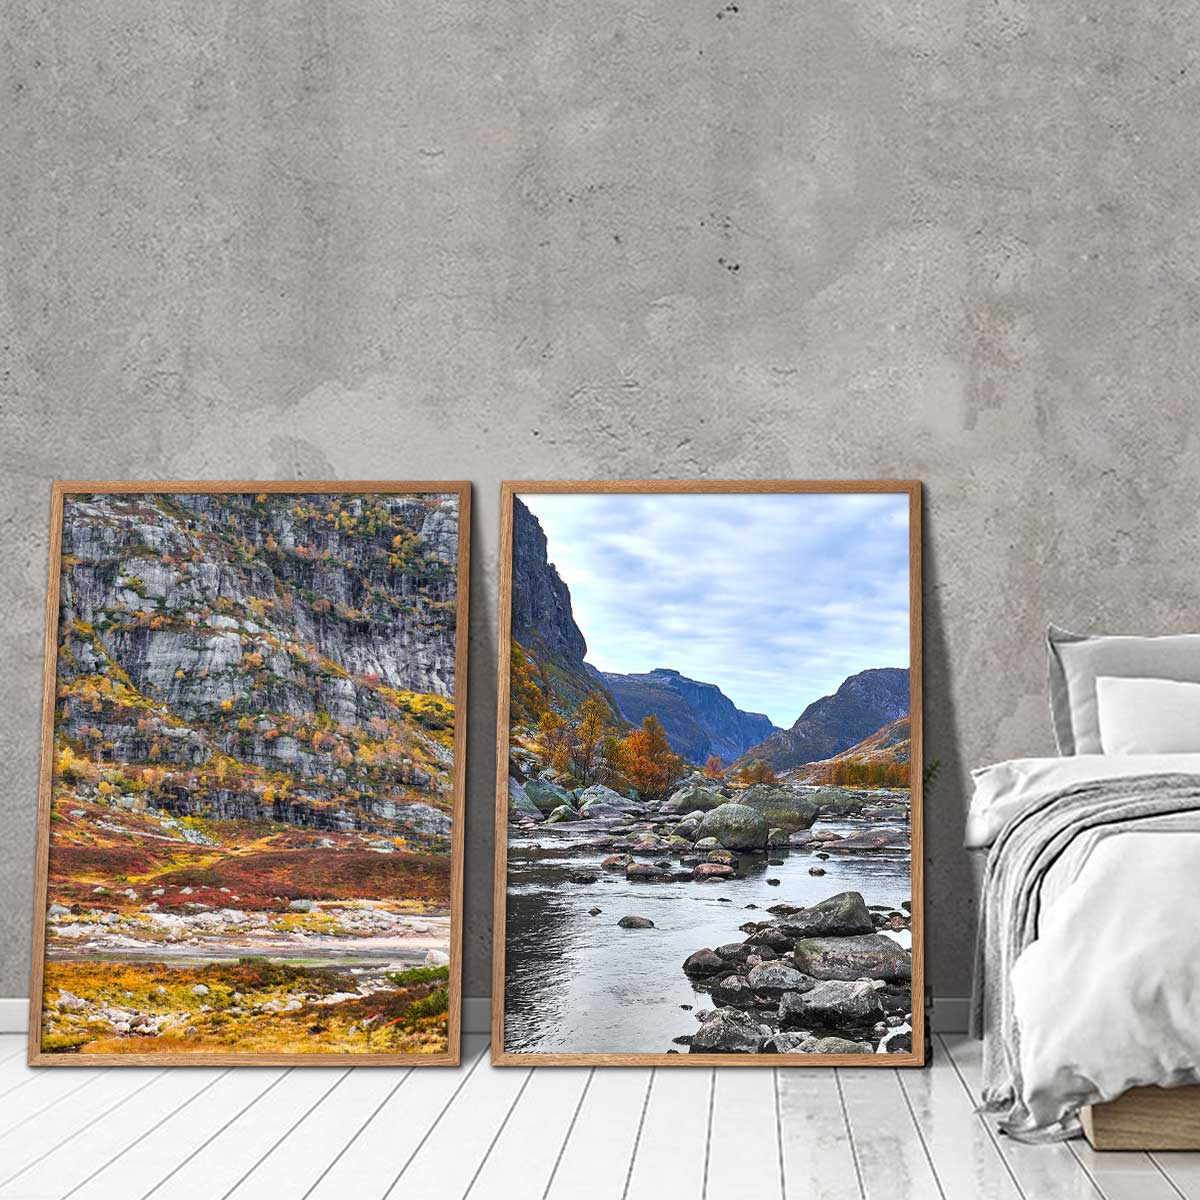 to indrammede billeder med norske fjelde i efterårsfarver